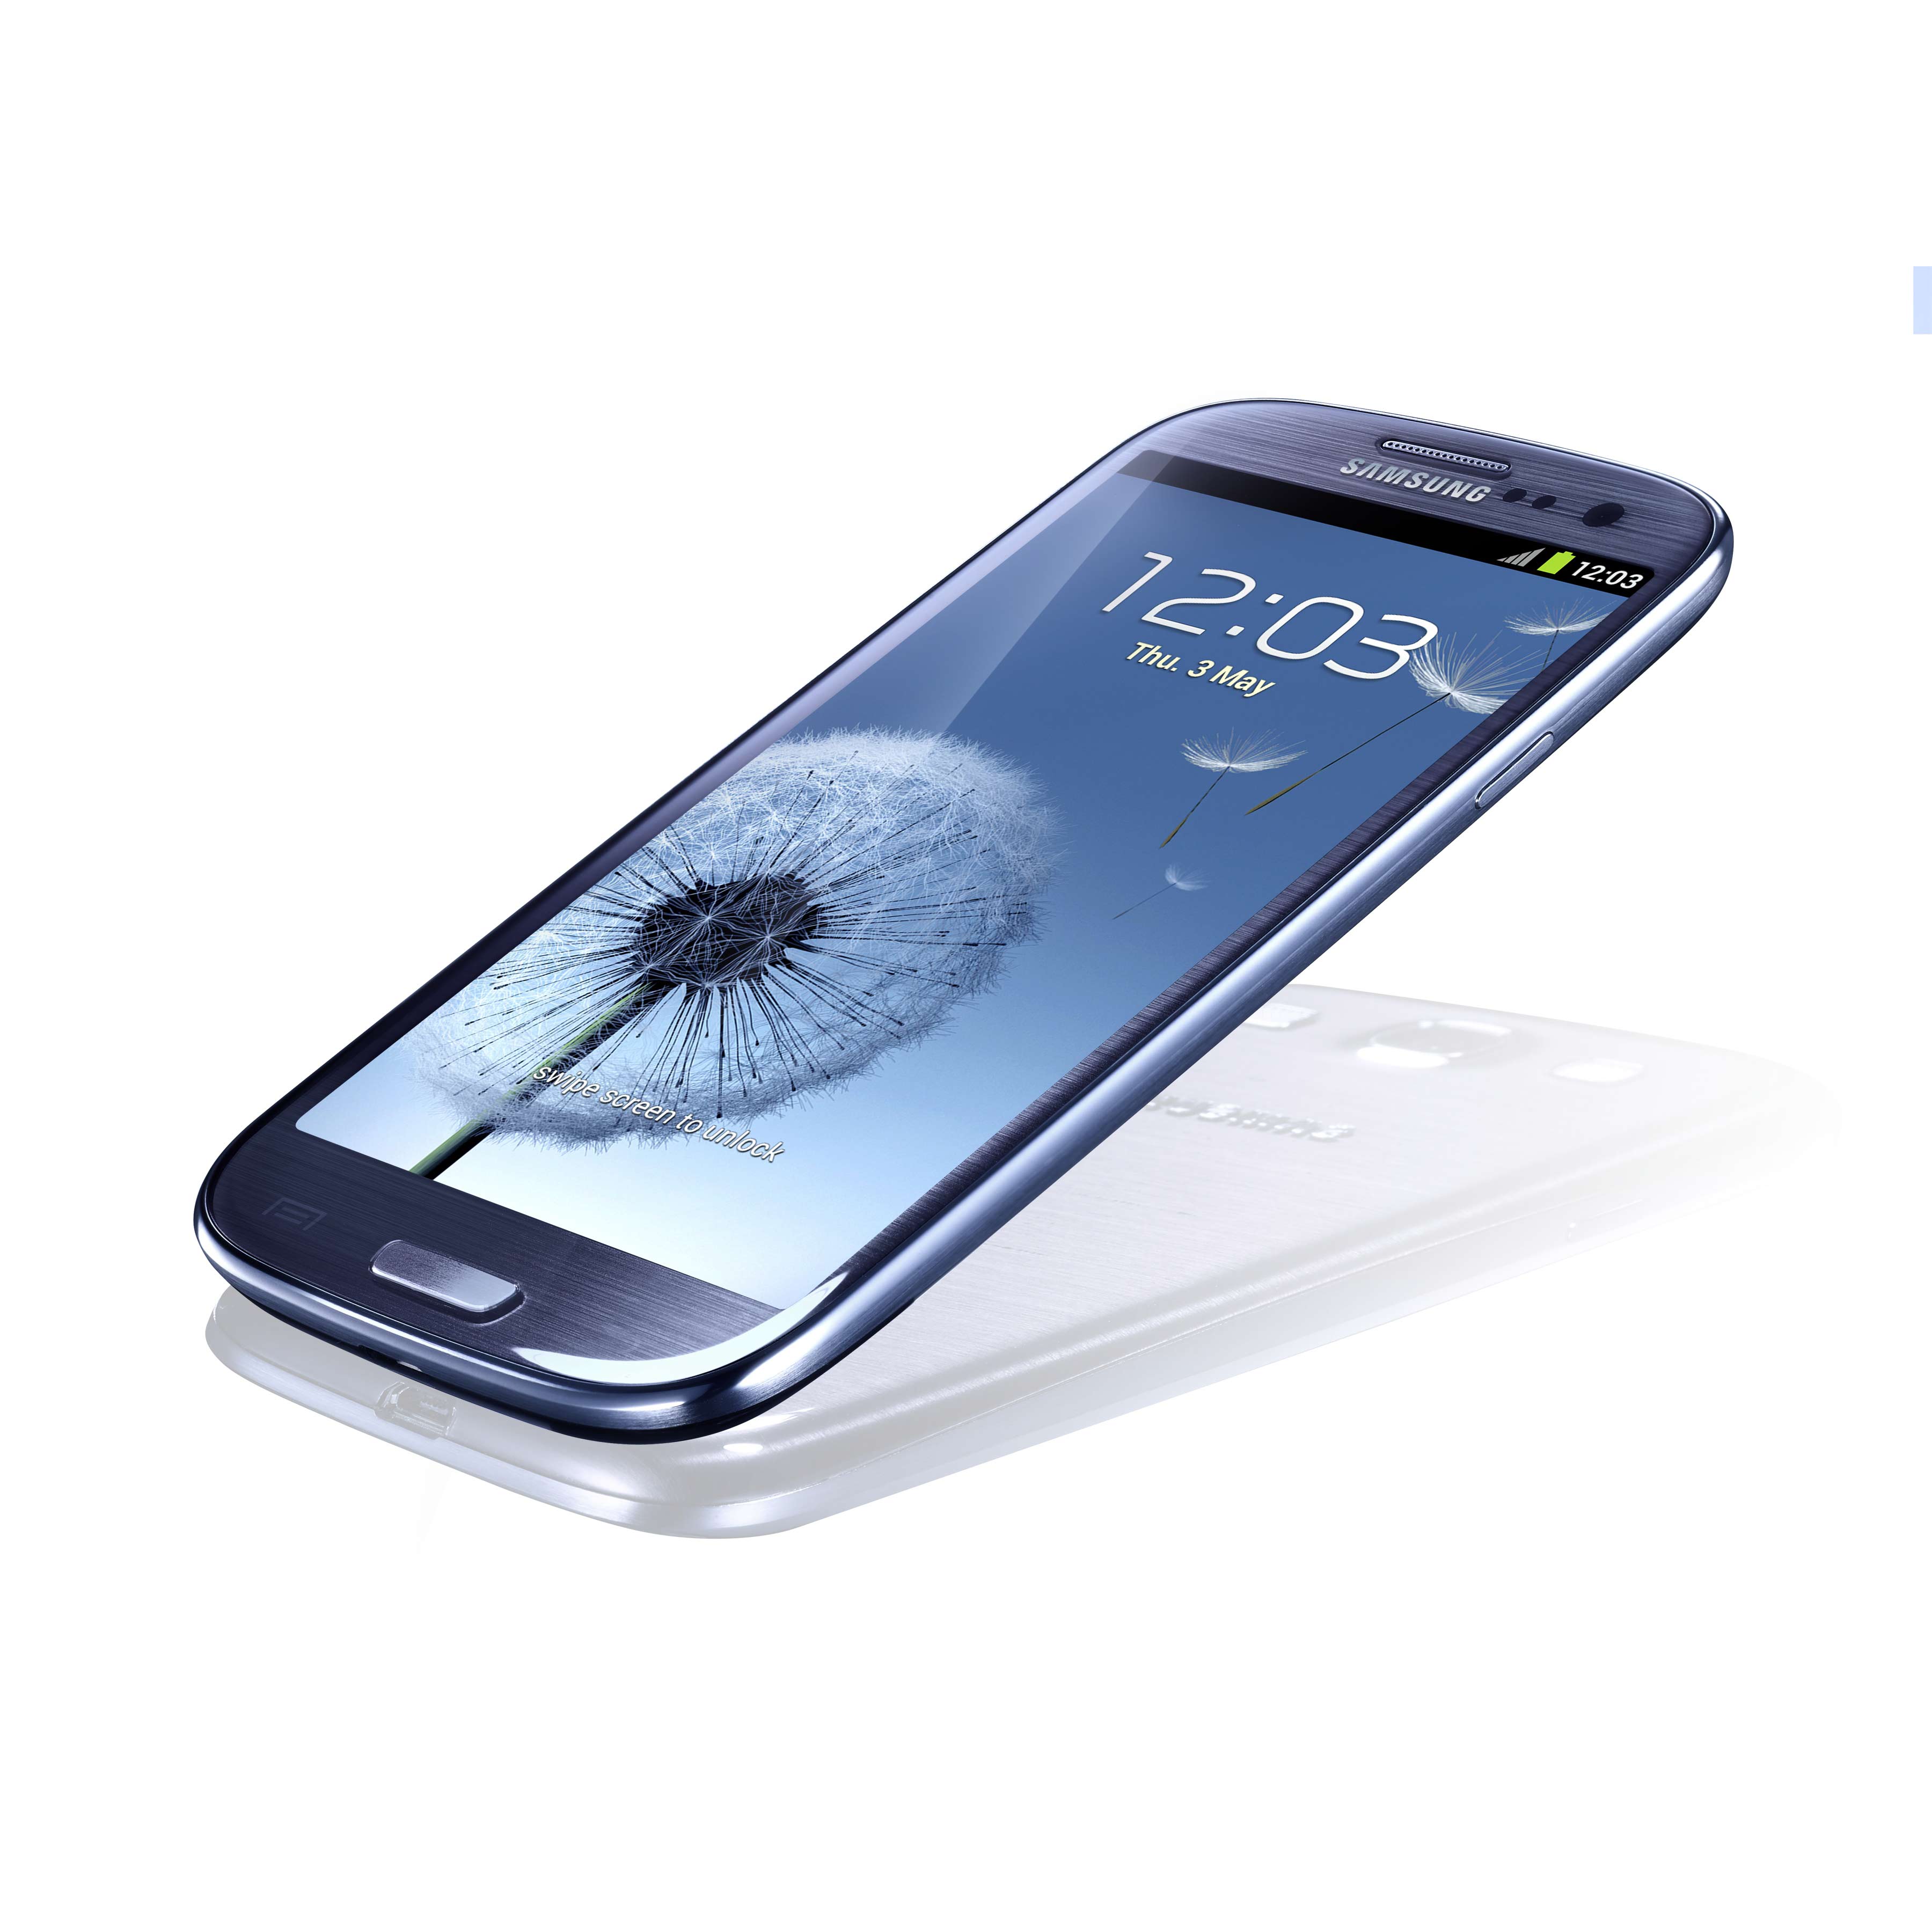 Купить мобильный телефон цены. Samsung Galaxy s III gt-i9300 16gb. I9300 Galaxy s III 16gb Samsung. Samsung Galaxy s3 Neo. Смартфон Samsung Galaxy s III 4g gt-i9305.